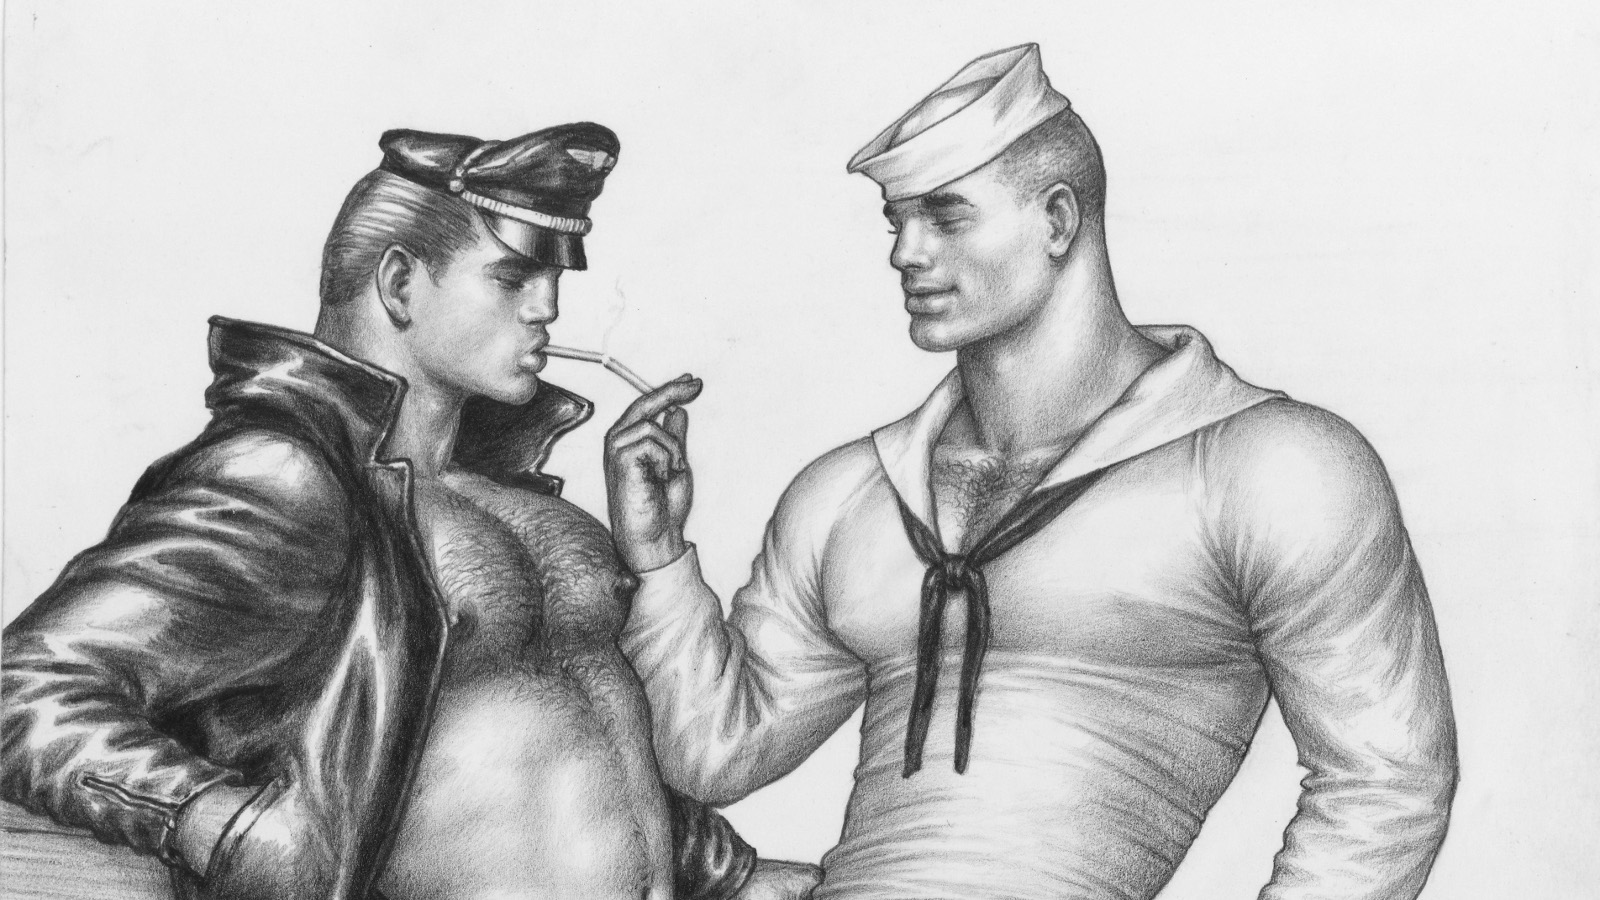 Kuvassa on vasemmalla mies, jolla on päässään musta lippalakki ja nahkatakki auki paljaalla rinnuksella. Oikella on toinen mies, jolla on vaalea merimieslakki ja merimiespaita. Hänellä on oikea käsi pystyssä ja viittelee etusormella itseensä päin.